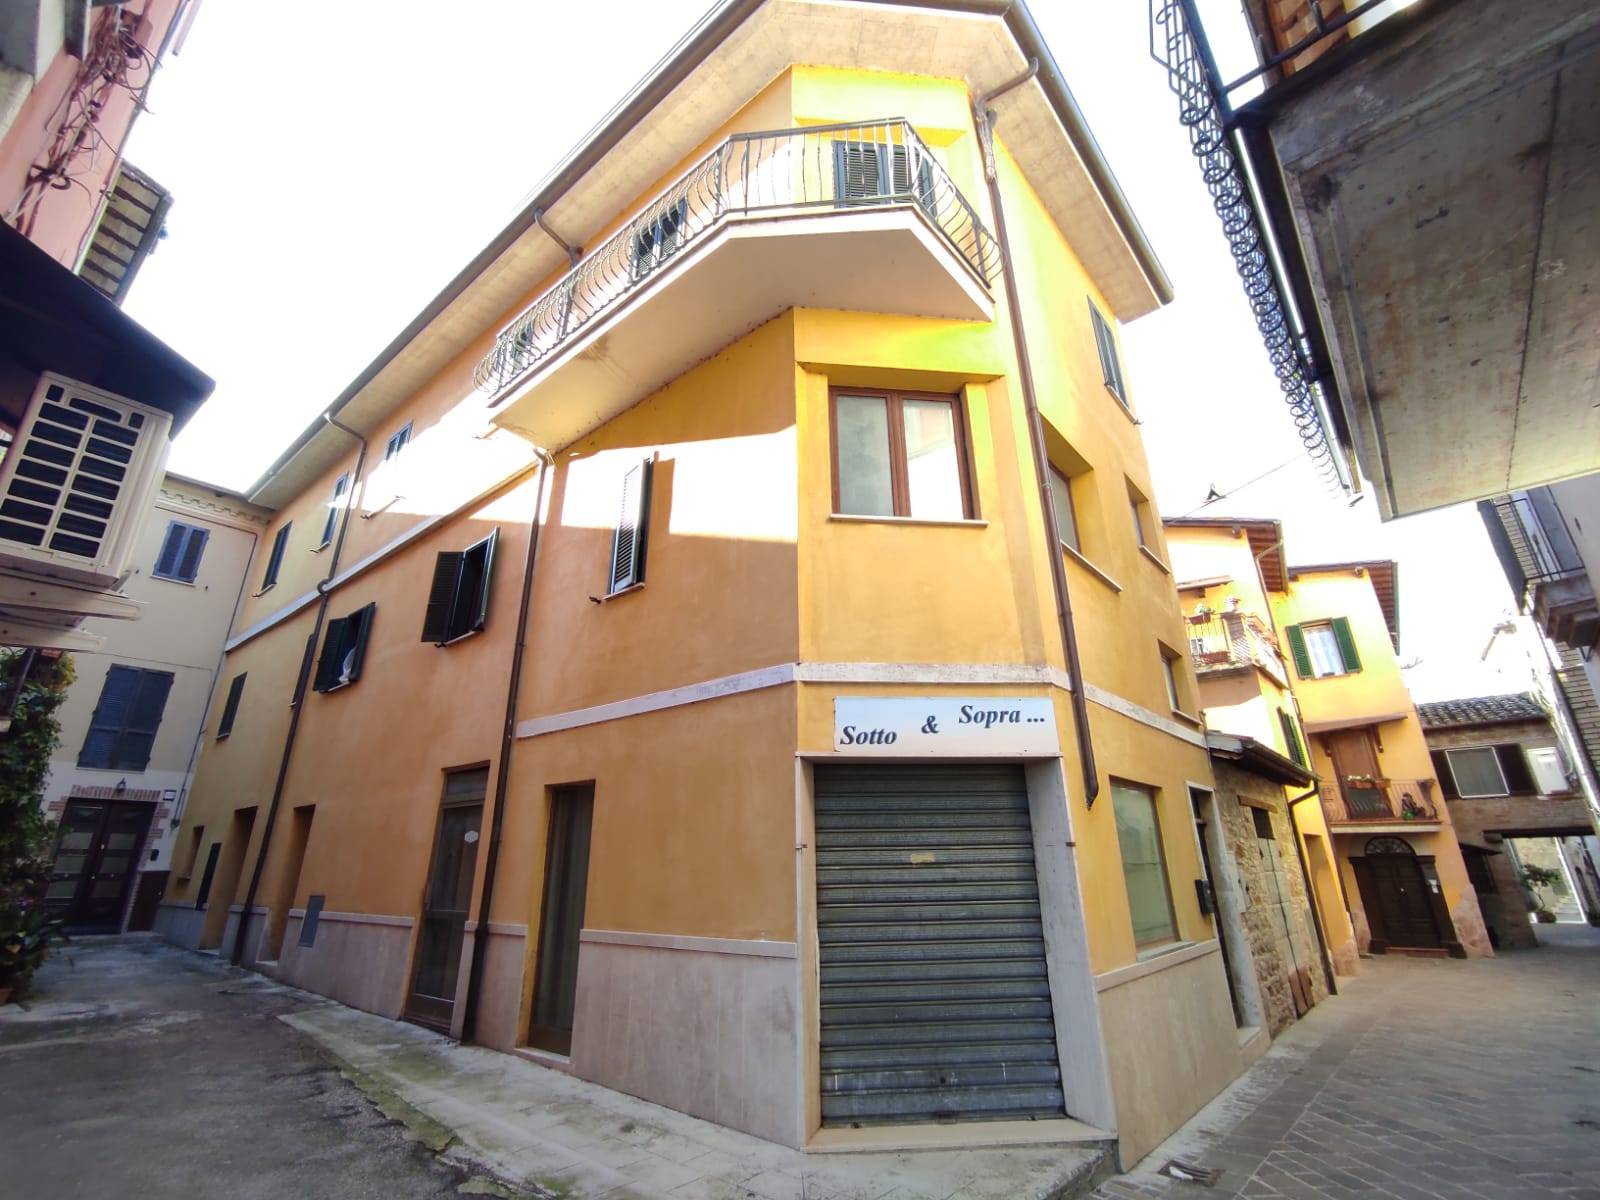 Villa Bifamiliare in vendita a Assisi, 5 locali, zona ignano, prezzo € 55.000 | PortaleAgenzieImmobiliari.it